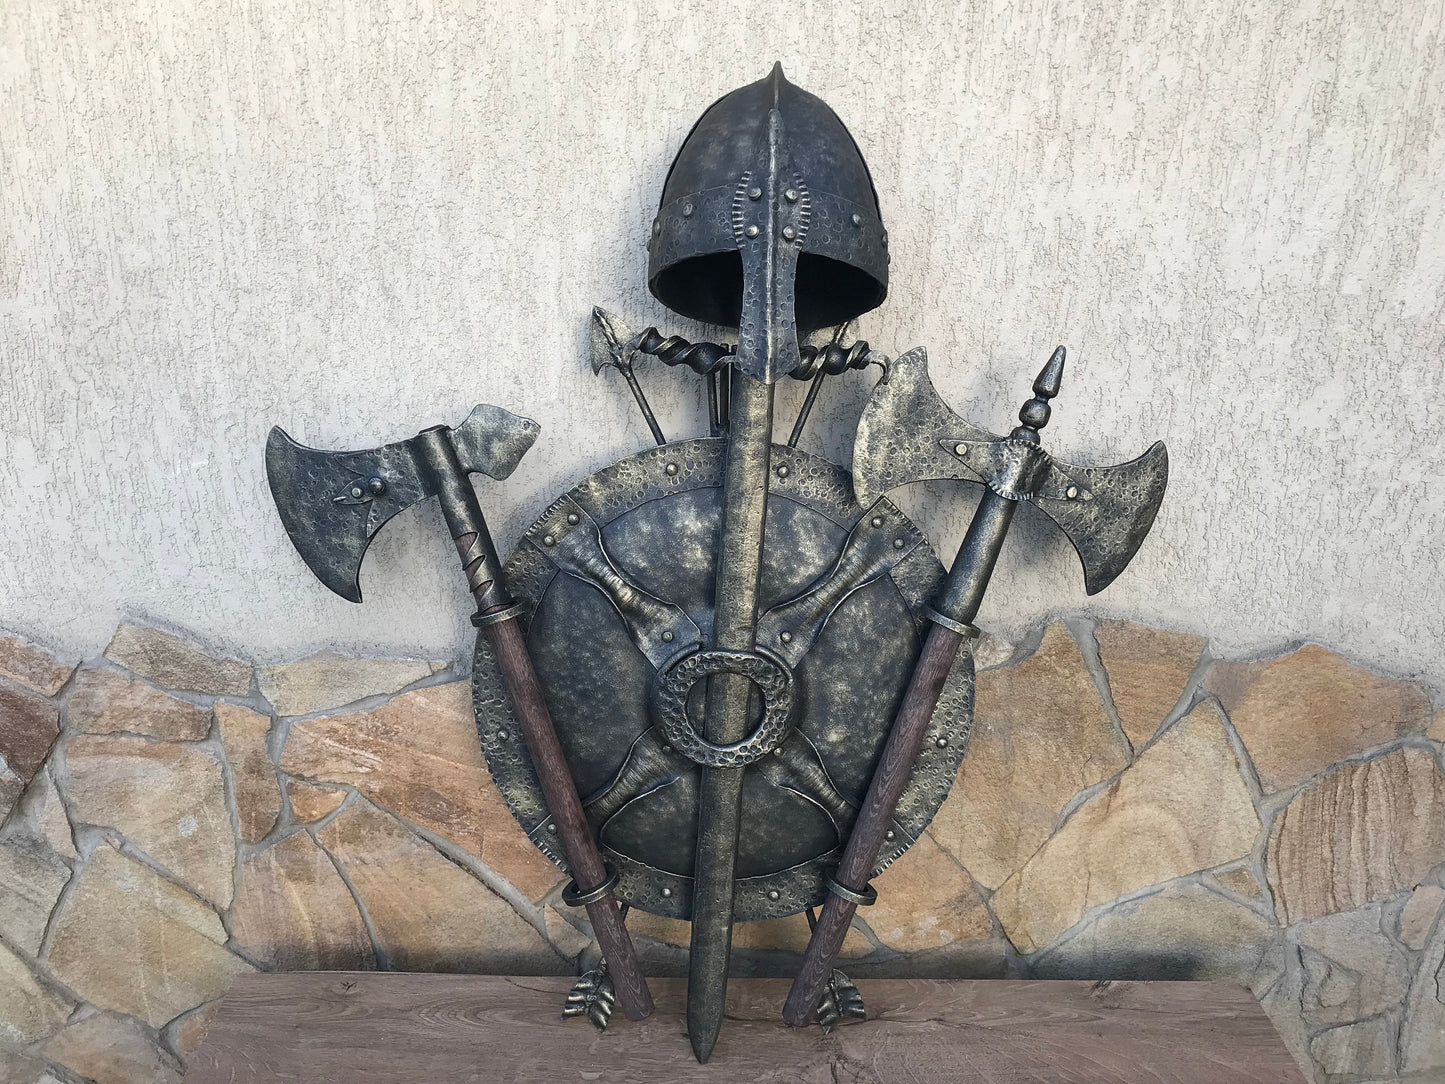 Viking helm, helm, medieval helm, battle helm, knight helm, warrior helm, helmet, Middle Ages helm, crusader helm, reenactor, bassinet, axe